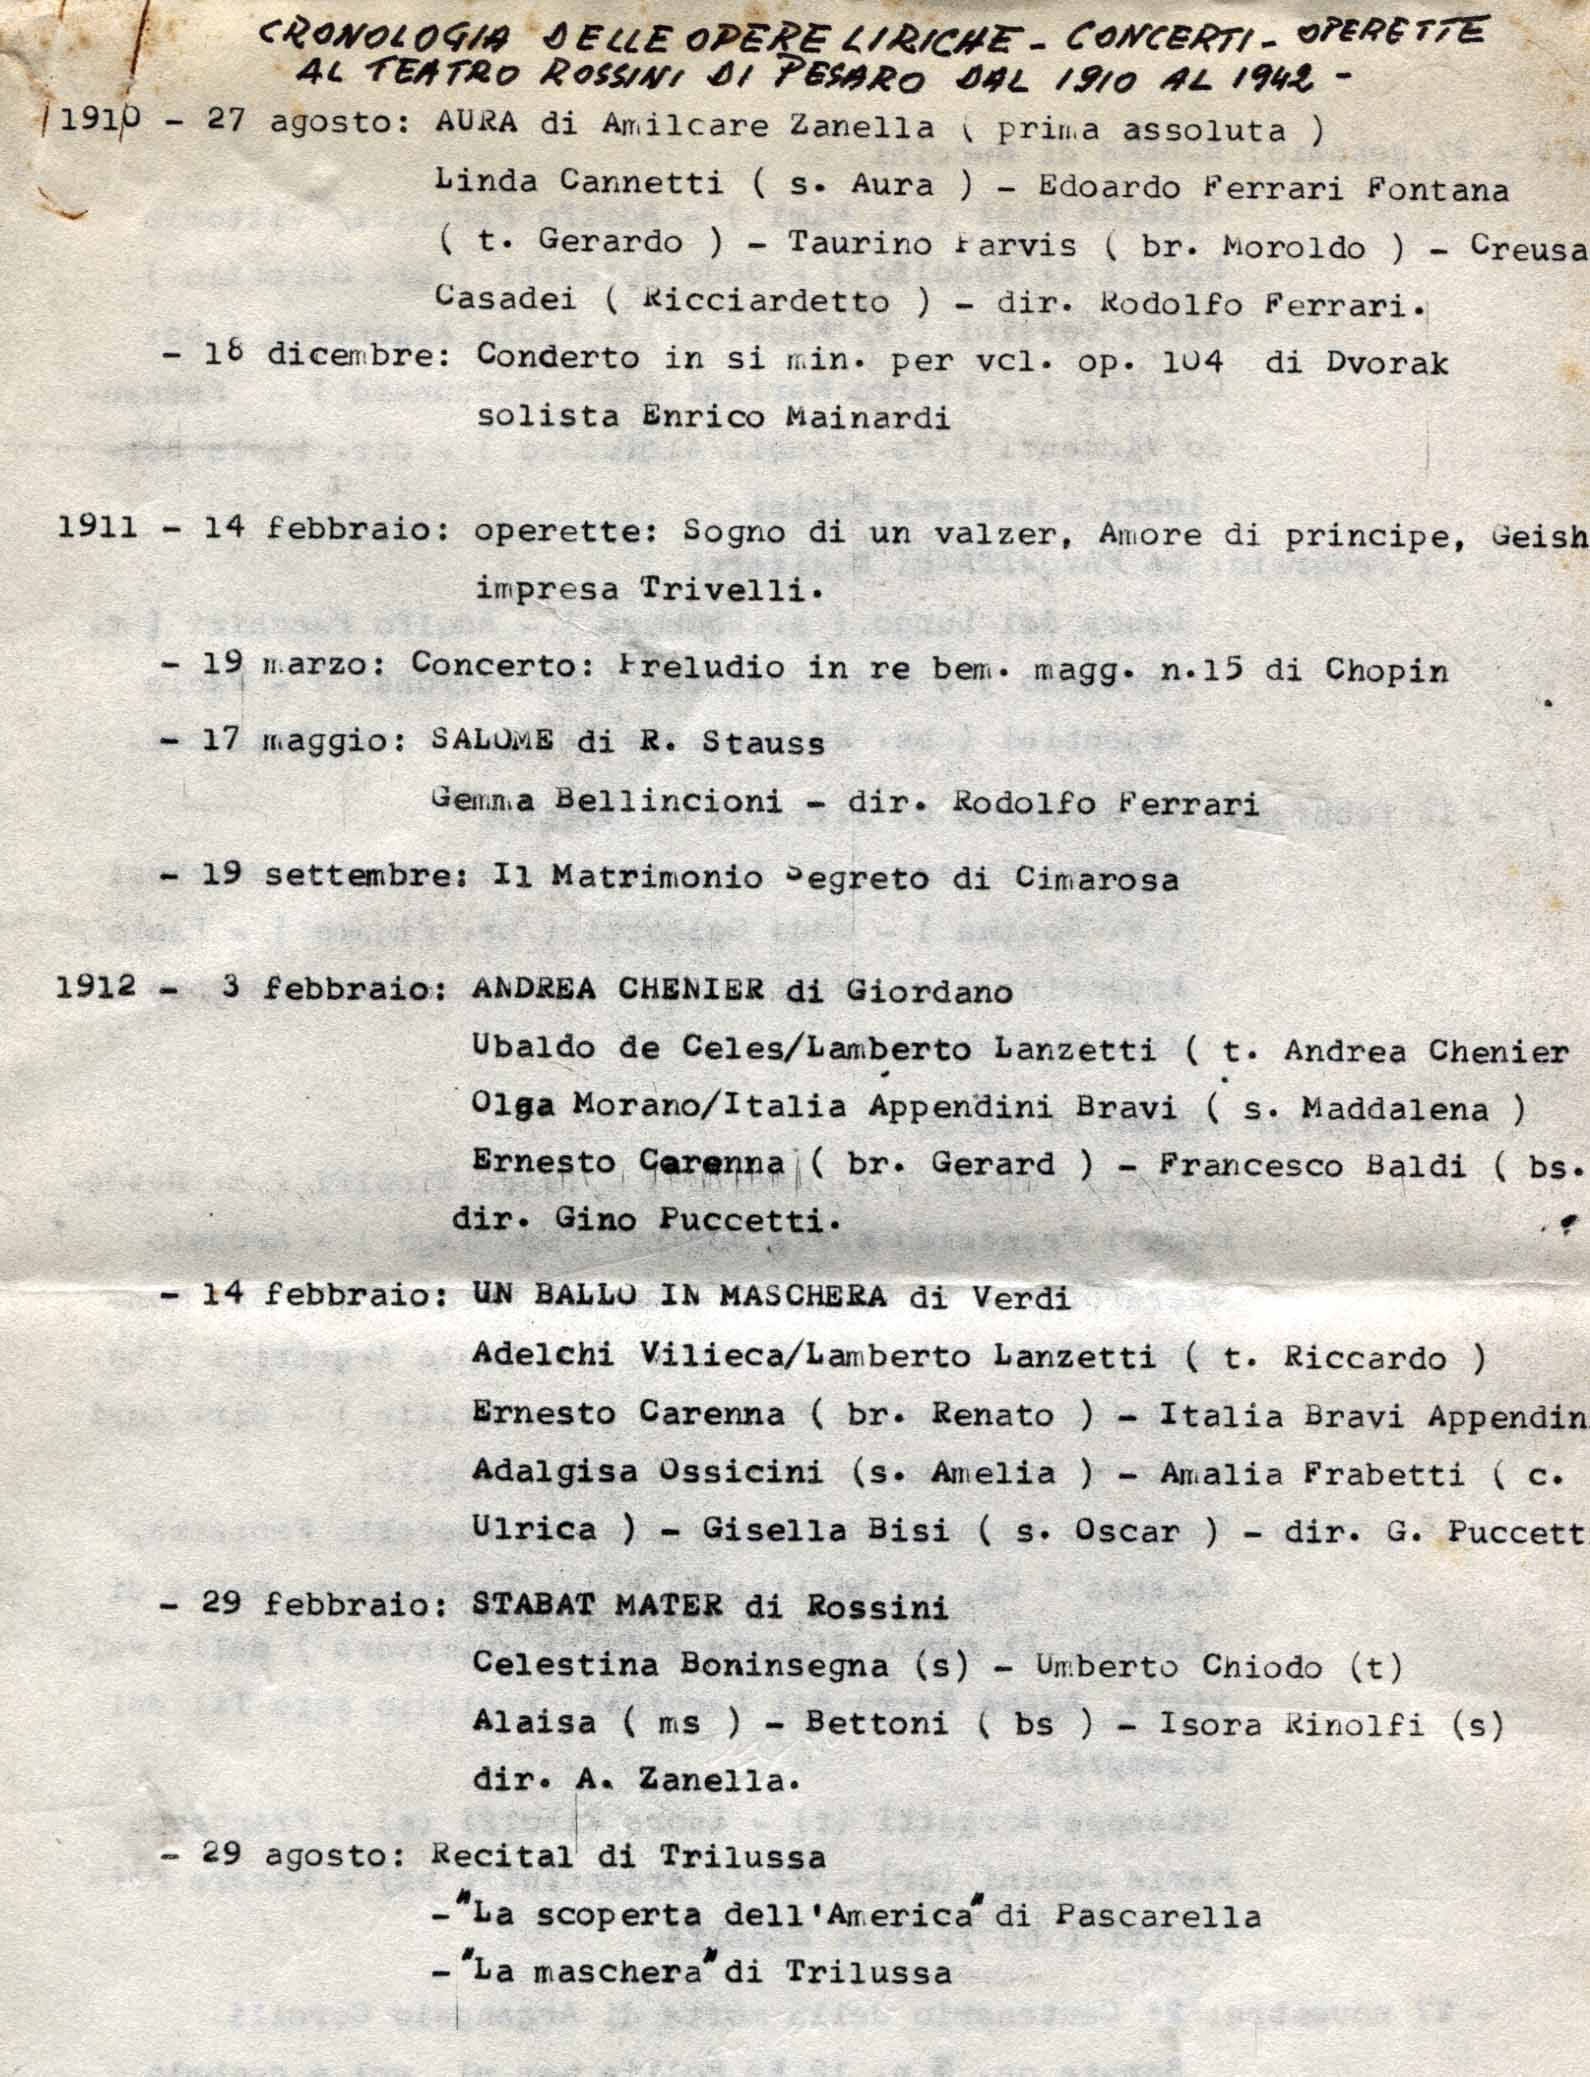 Cronologia delle opere liriche concerti operette al Teatro Rossini di Pesaro dal 1910 al 1942